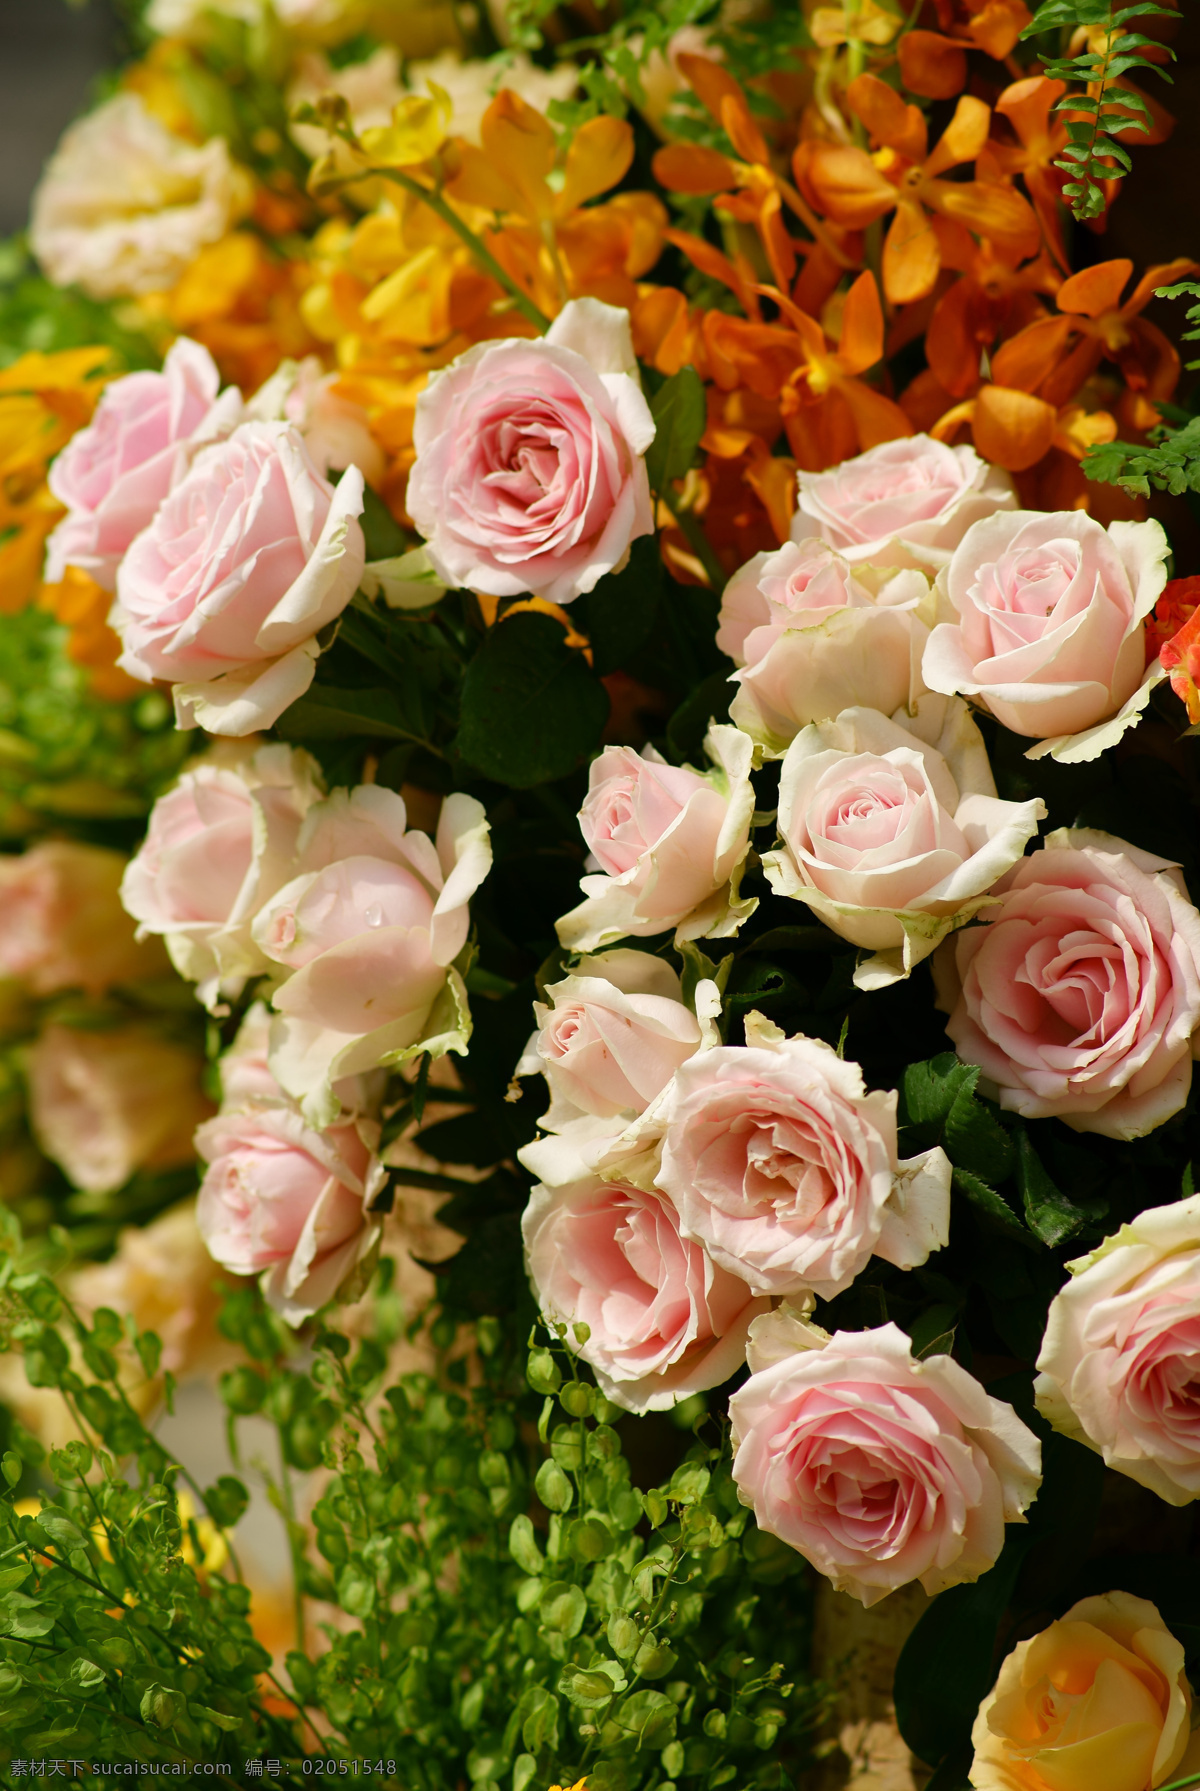 玫瑰 花 花卉 植物 婚礼 婚礼装饰 鲜花 生物世界 花草